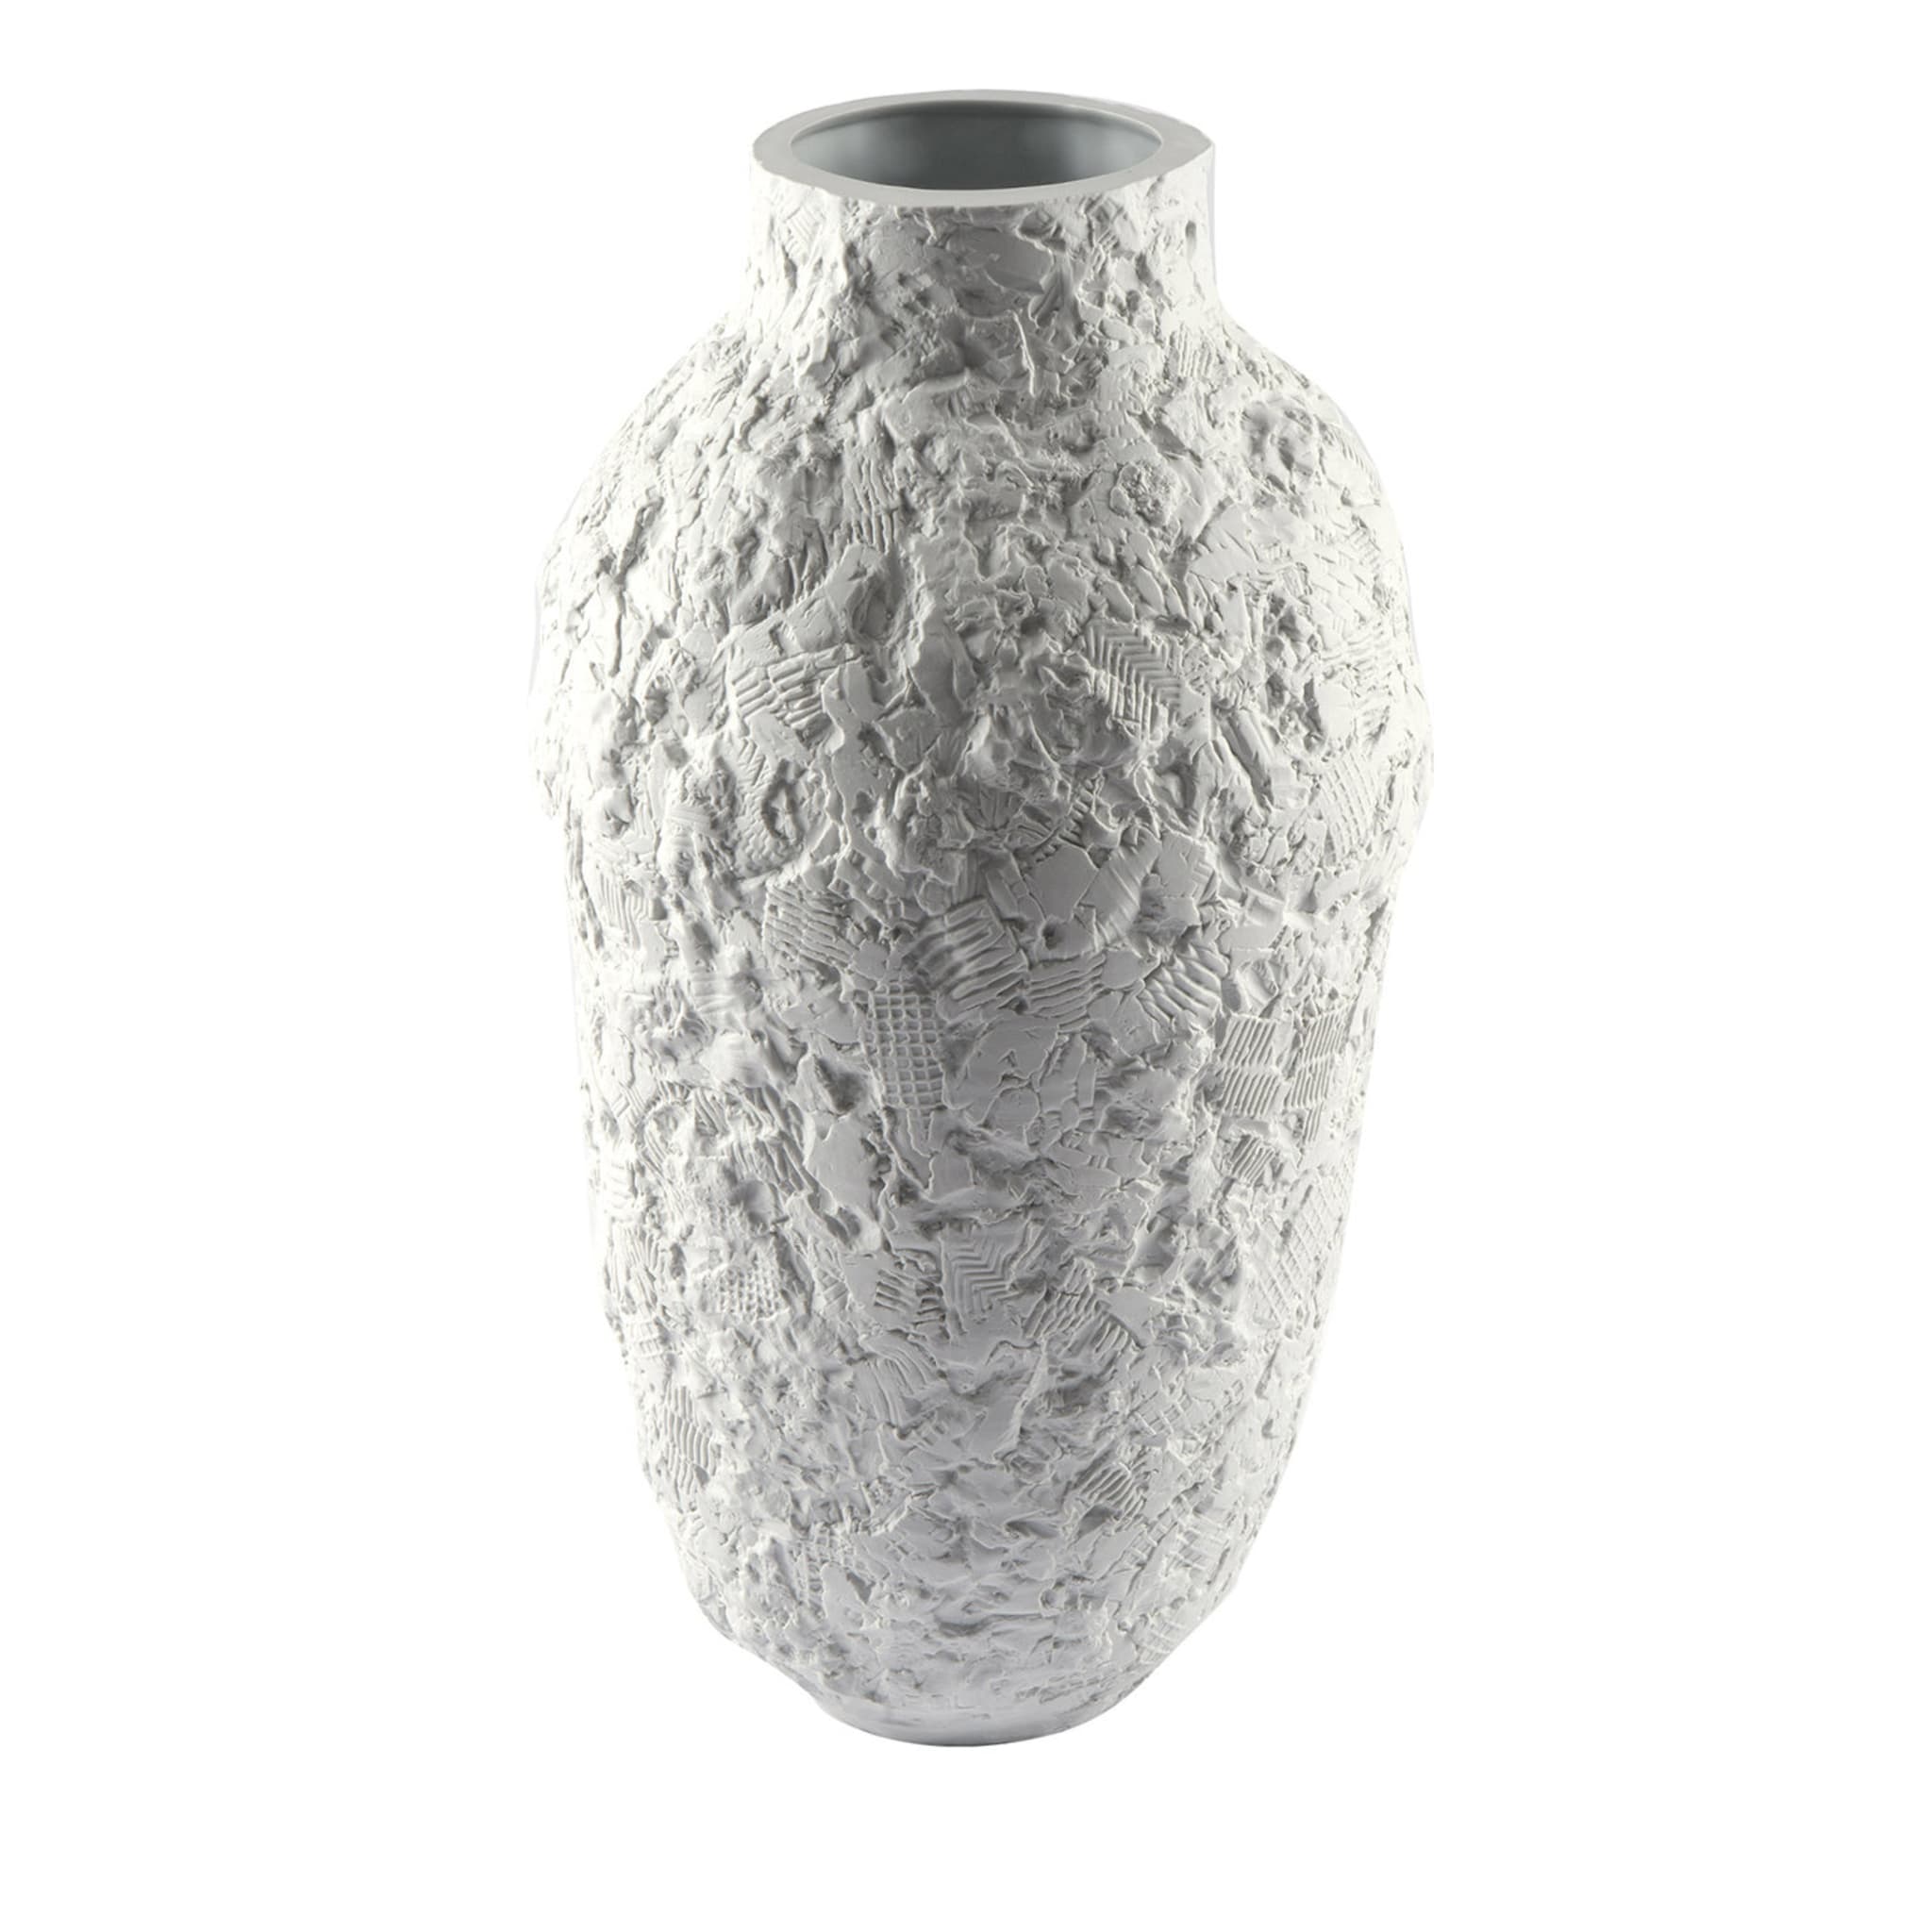 Esker Große Vase von Pol Polloniato - Hauptansicht